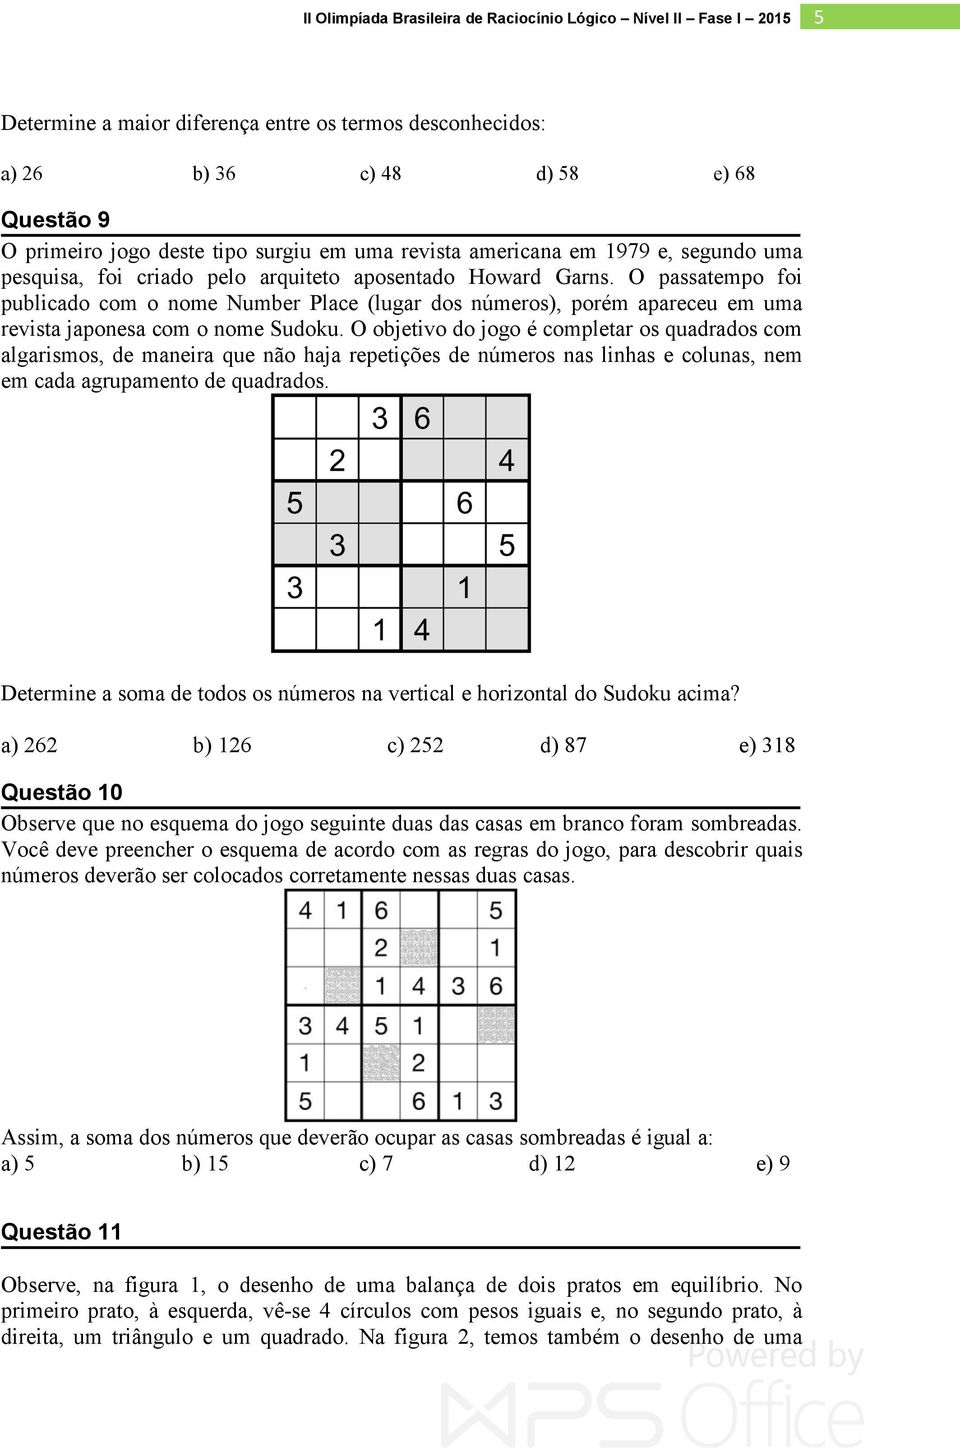 O objetivo do jogo é completar os quadrados com algarismos, de maneira que não haja repetições de números nas linhas e colunas, nem em cada agrupamento de quadrados.